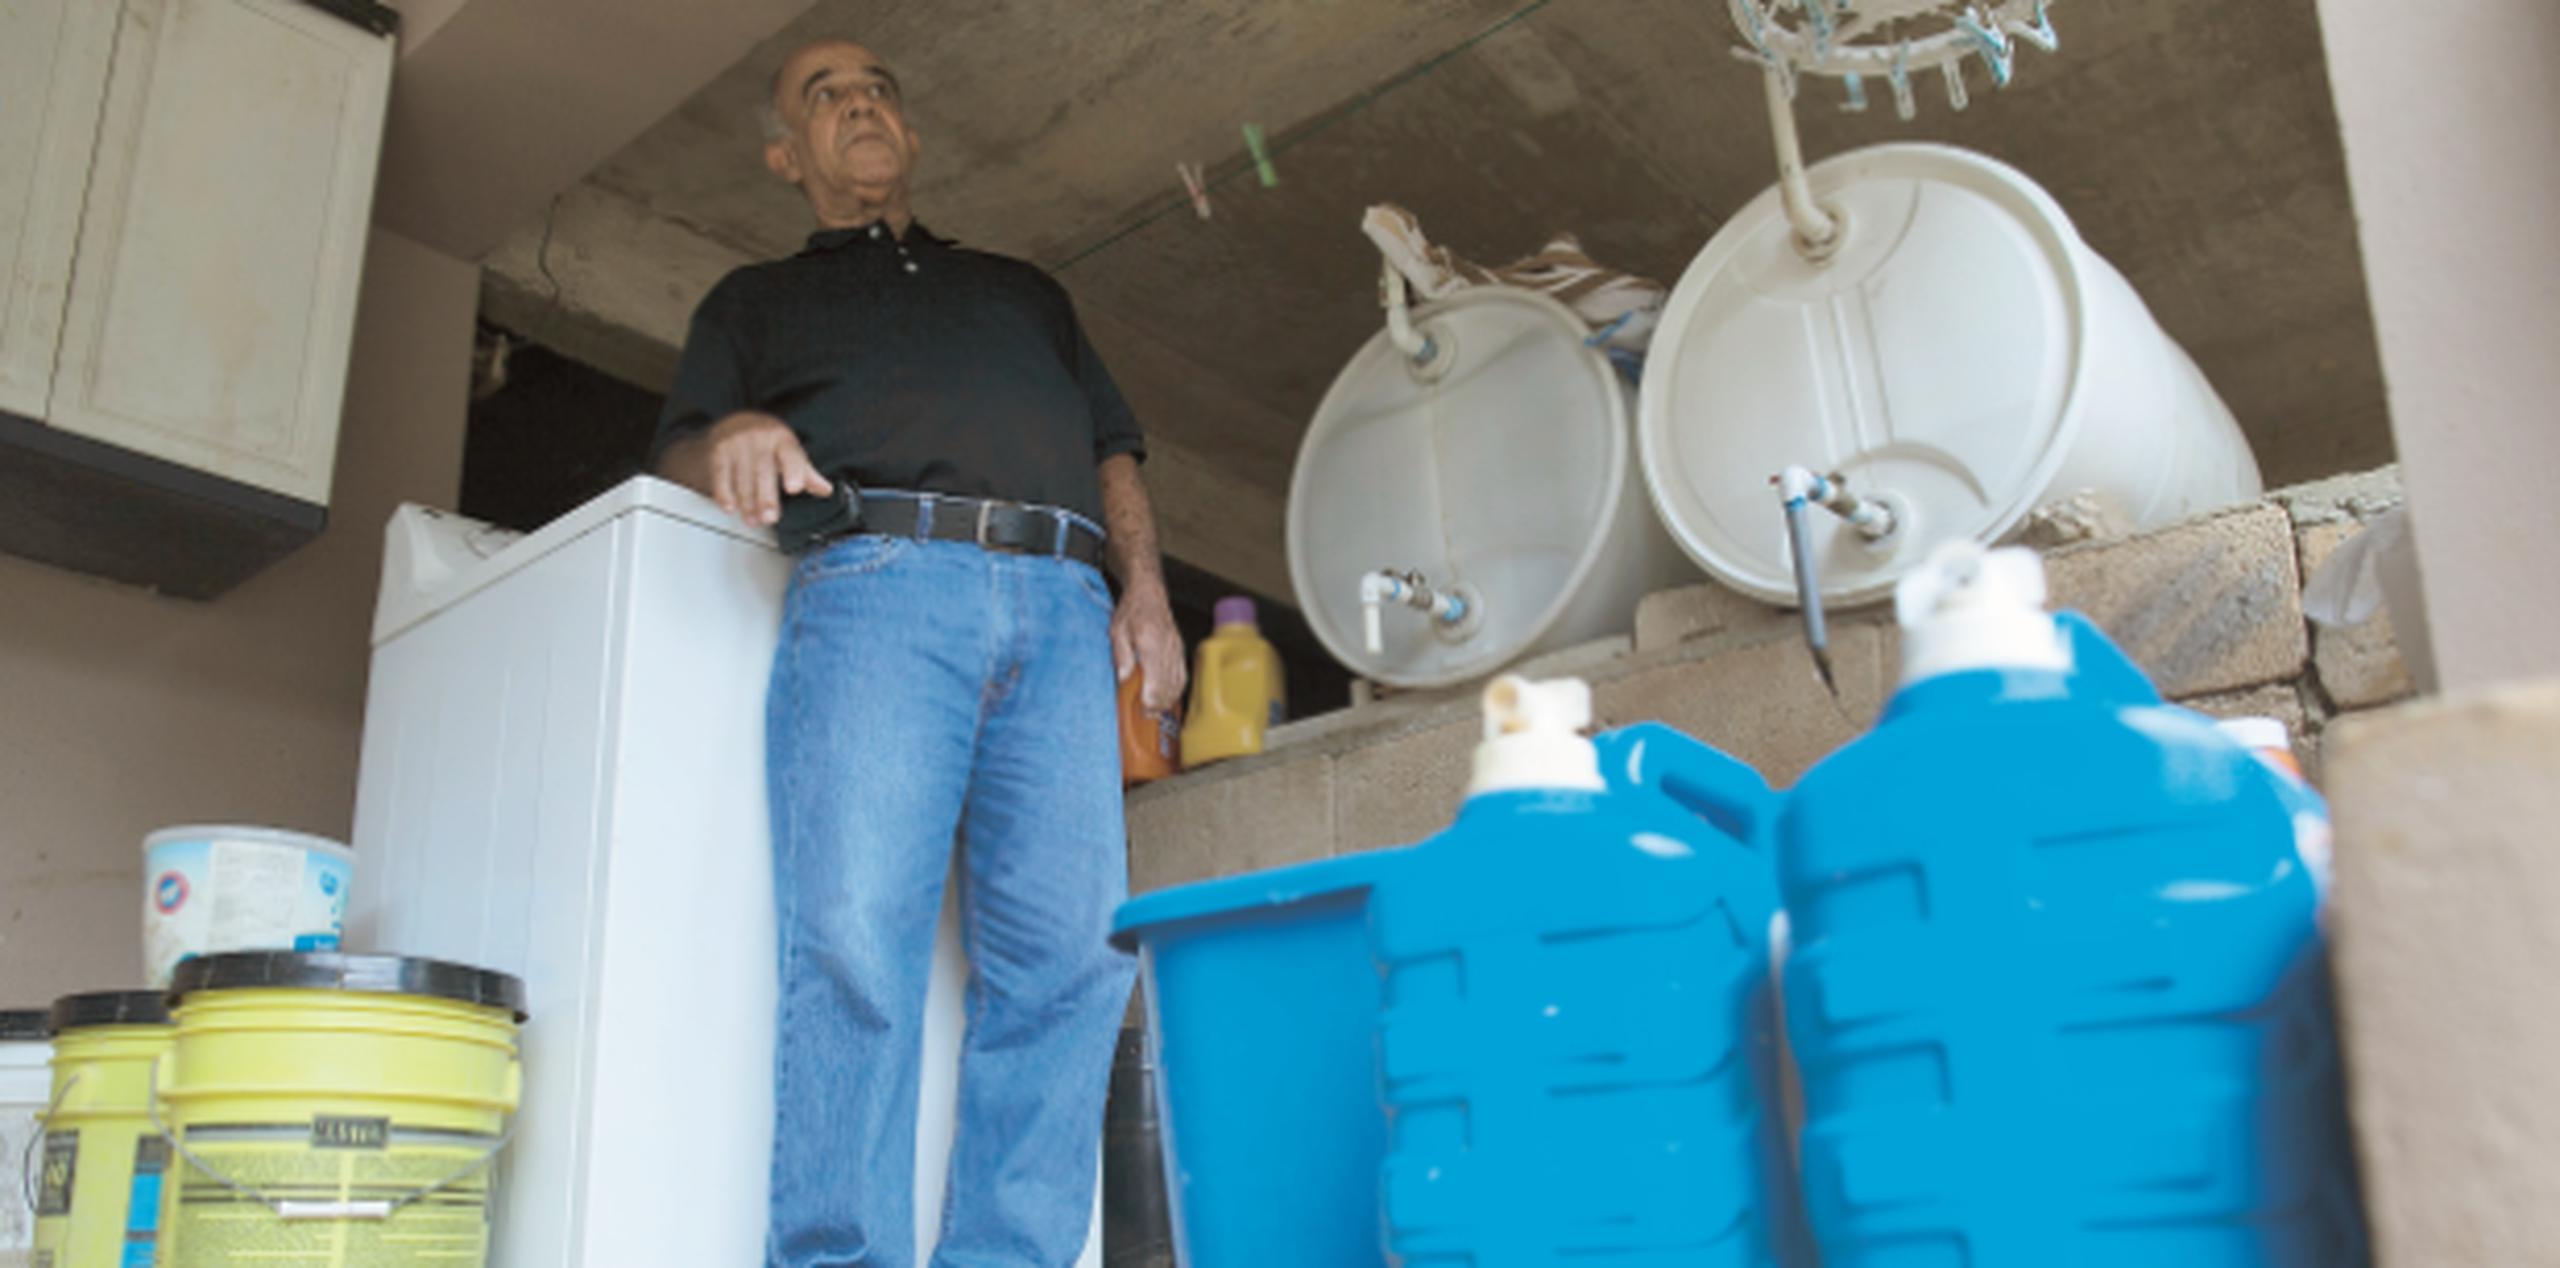 Ángel Vargas, vecino de Las Granjas, guarda agua en diferentes envases. (PARA EL NORTE / ALVIN J. BÁEZ)